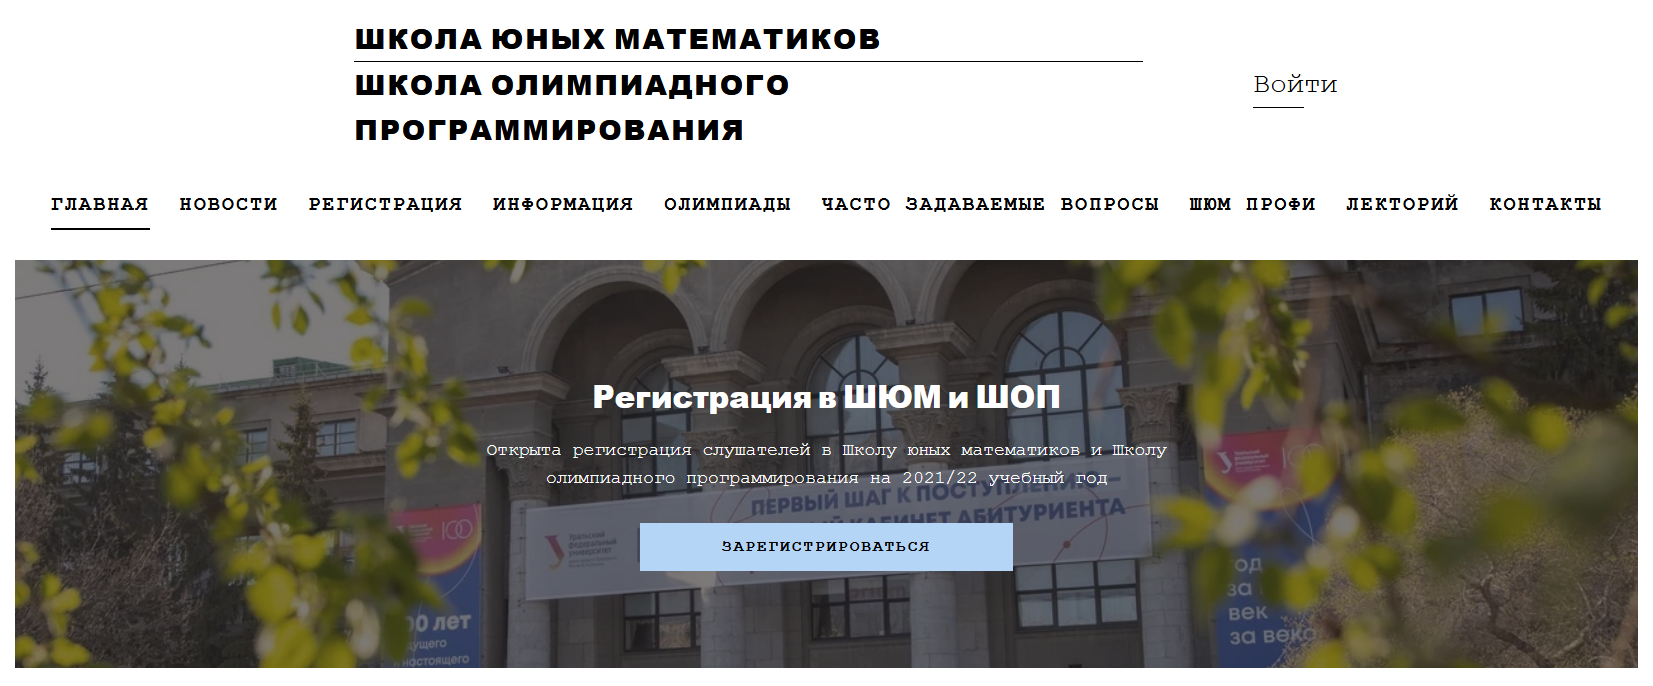 Главная страница сайта Школы юных математиков и Школы олимпиадного программирования